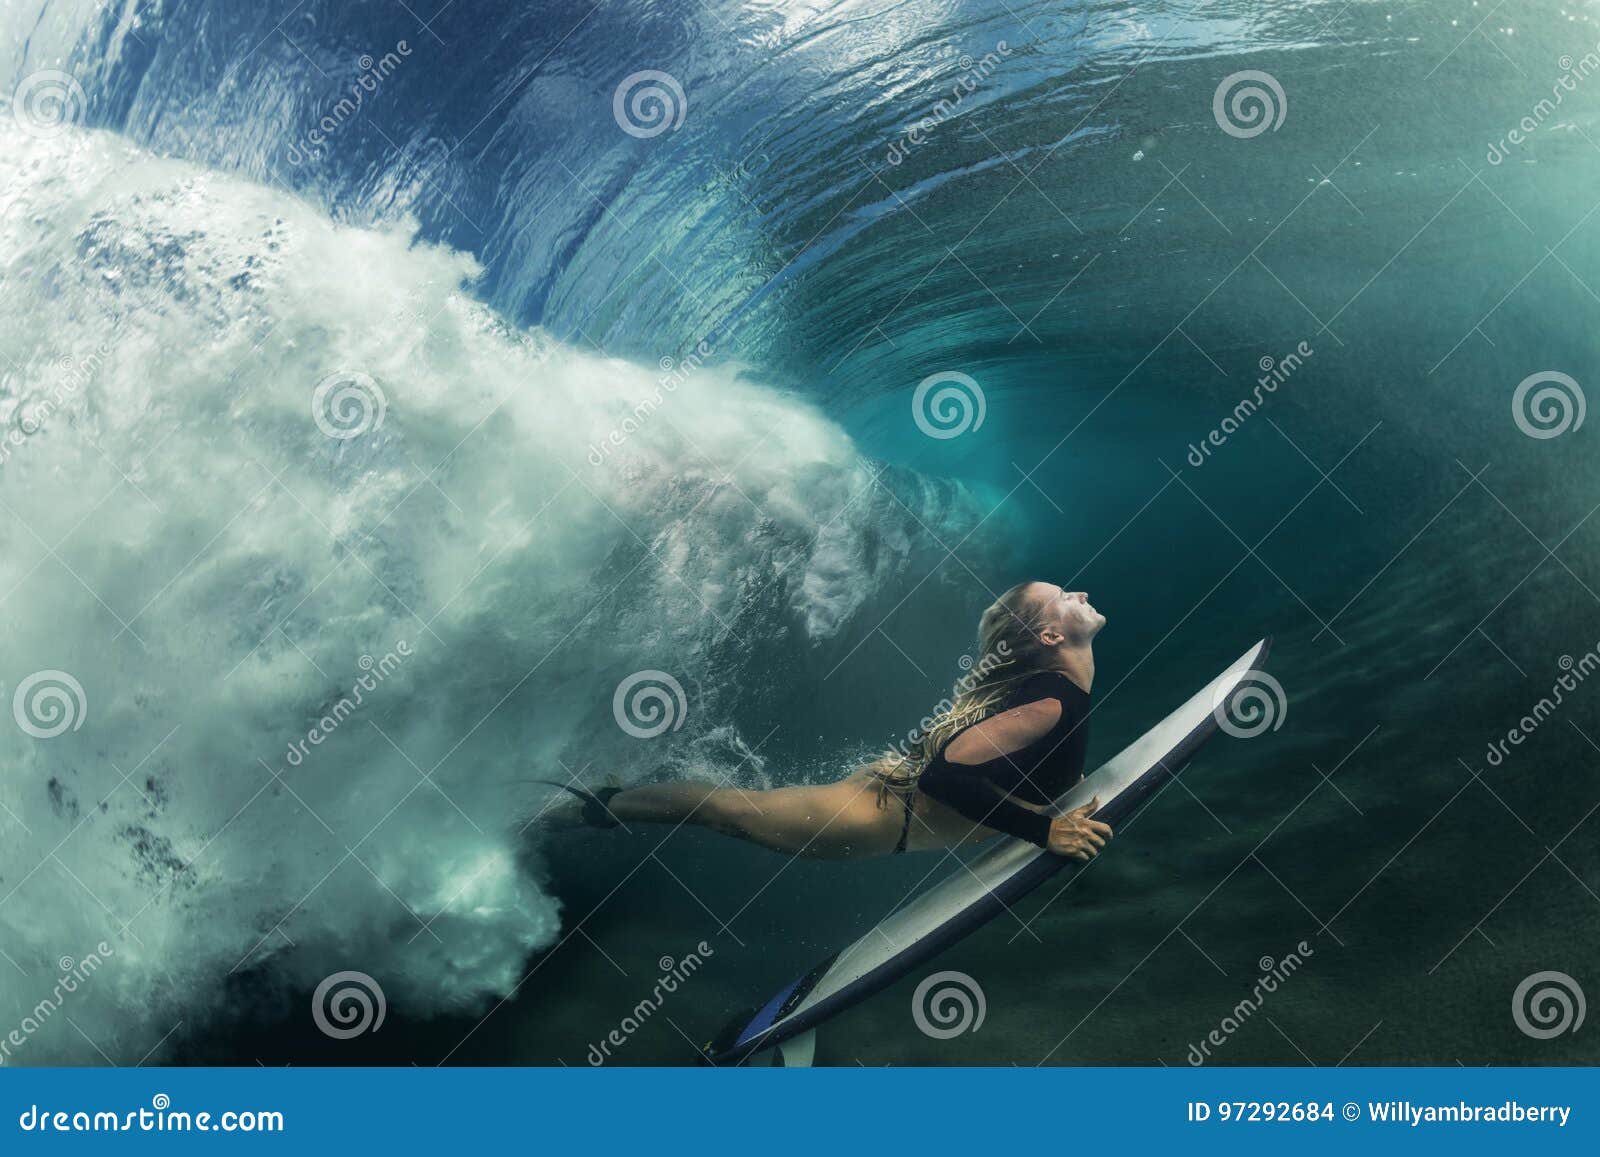 surfing girl having fun under wave